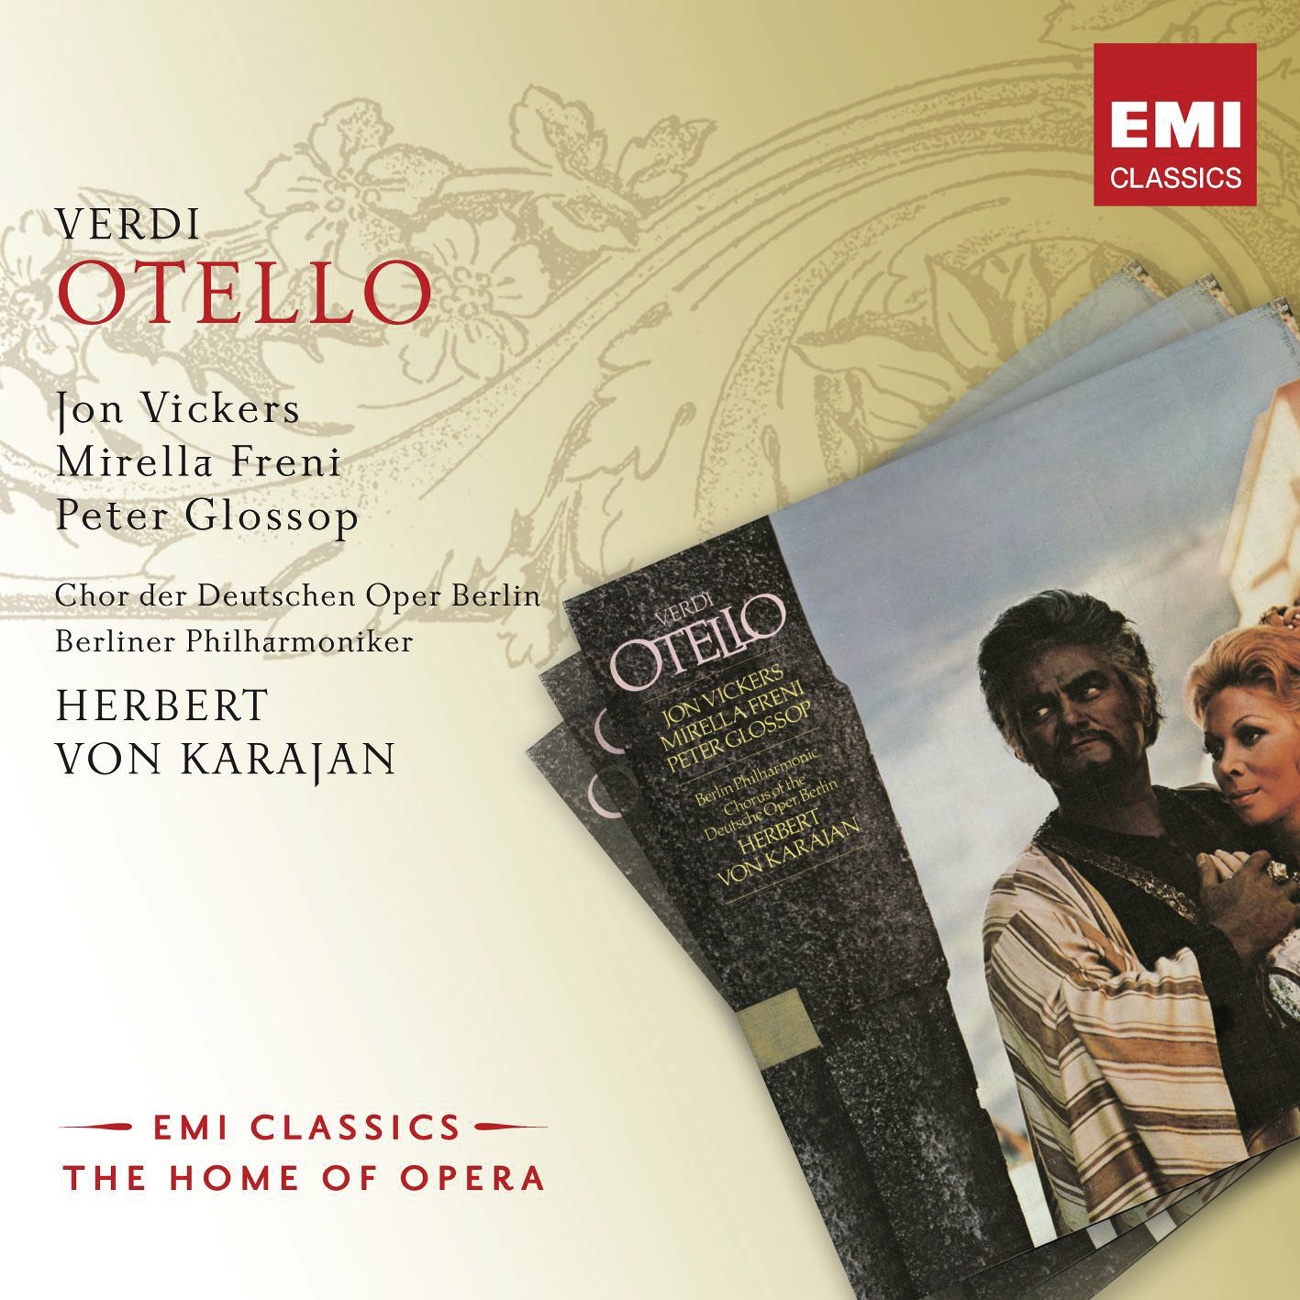 Otello 1988 Digital Remaster, ATTO TERZO, Quinta scena: Vieni, l' aula e deserta ... Jago Cassio Otello